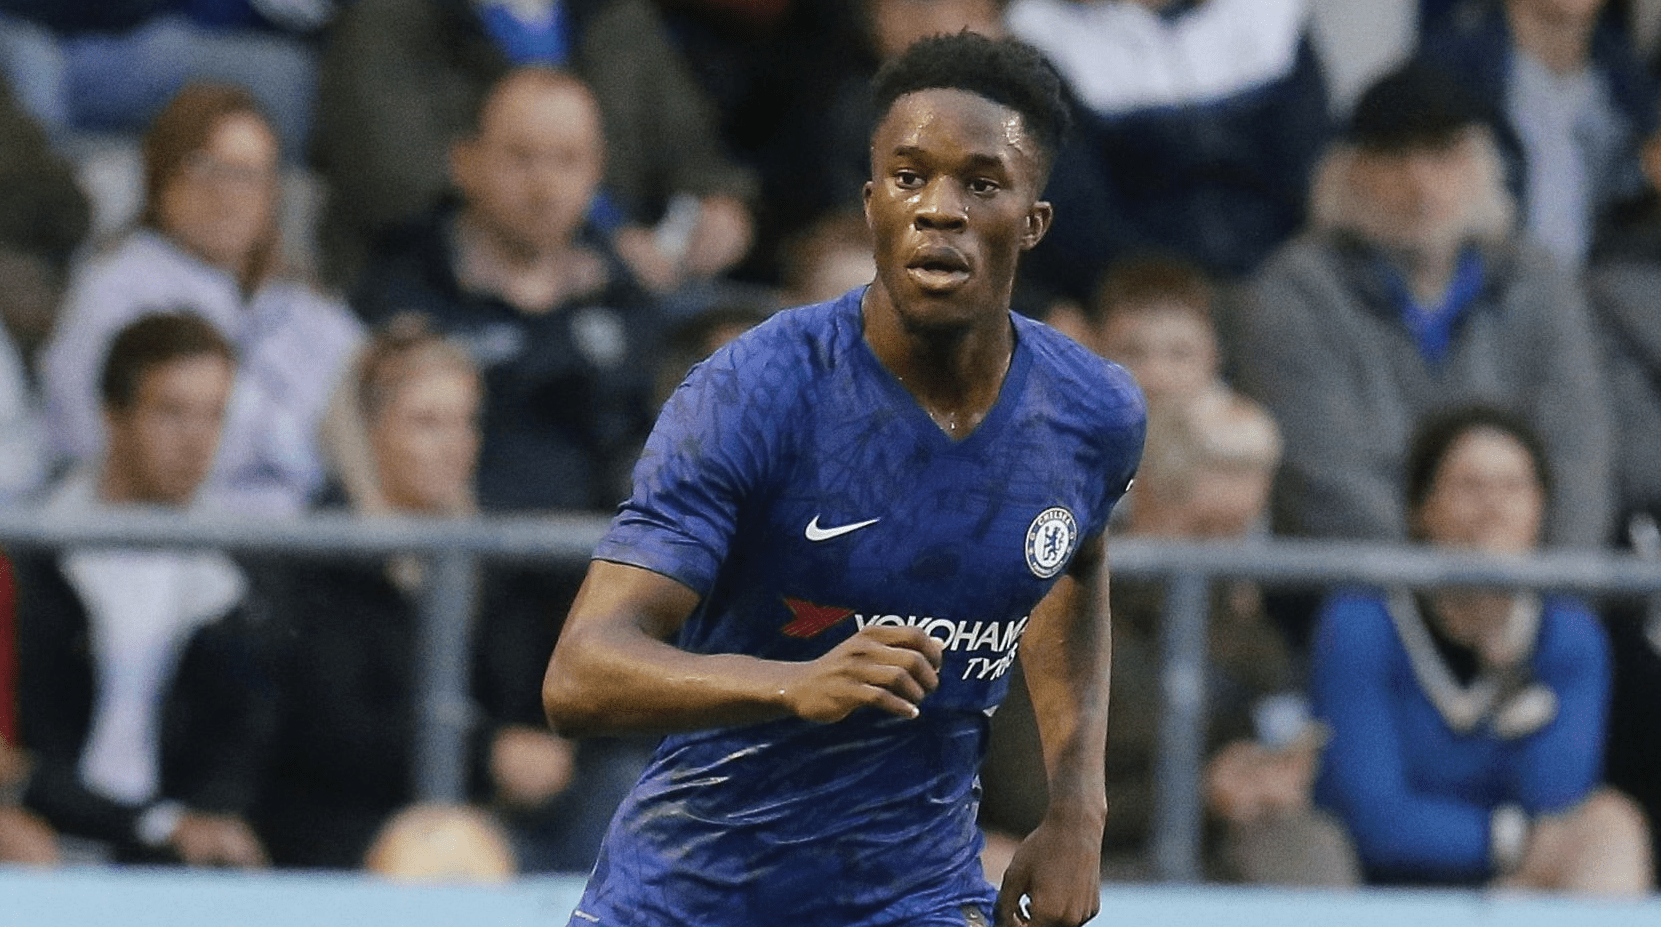 Chelsea-ING empresta jovem atacante ao Cercle Brugge-BEL